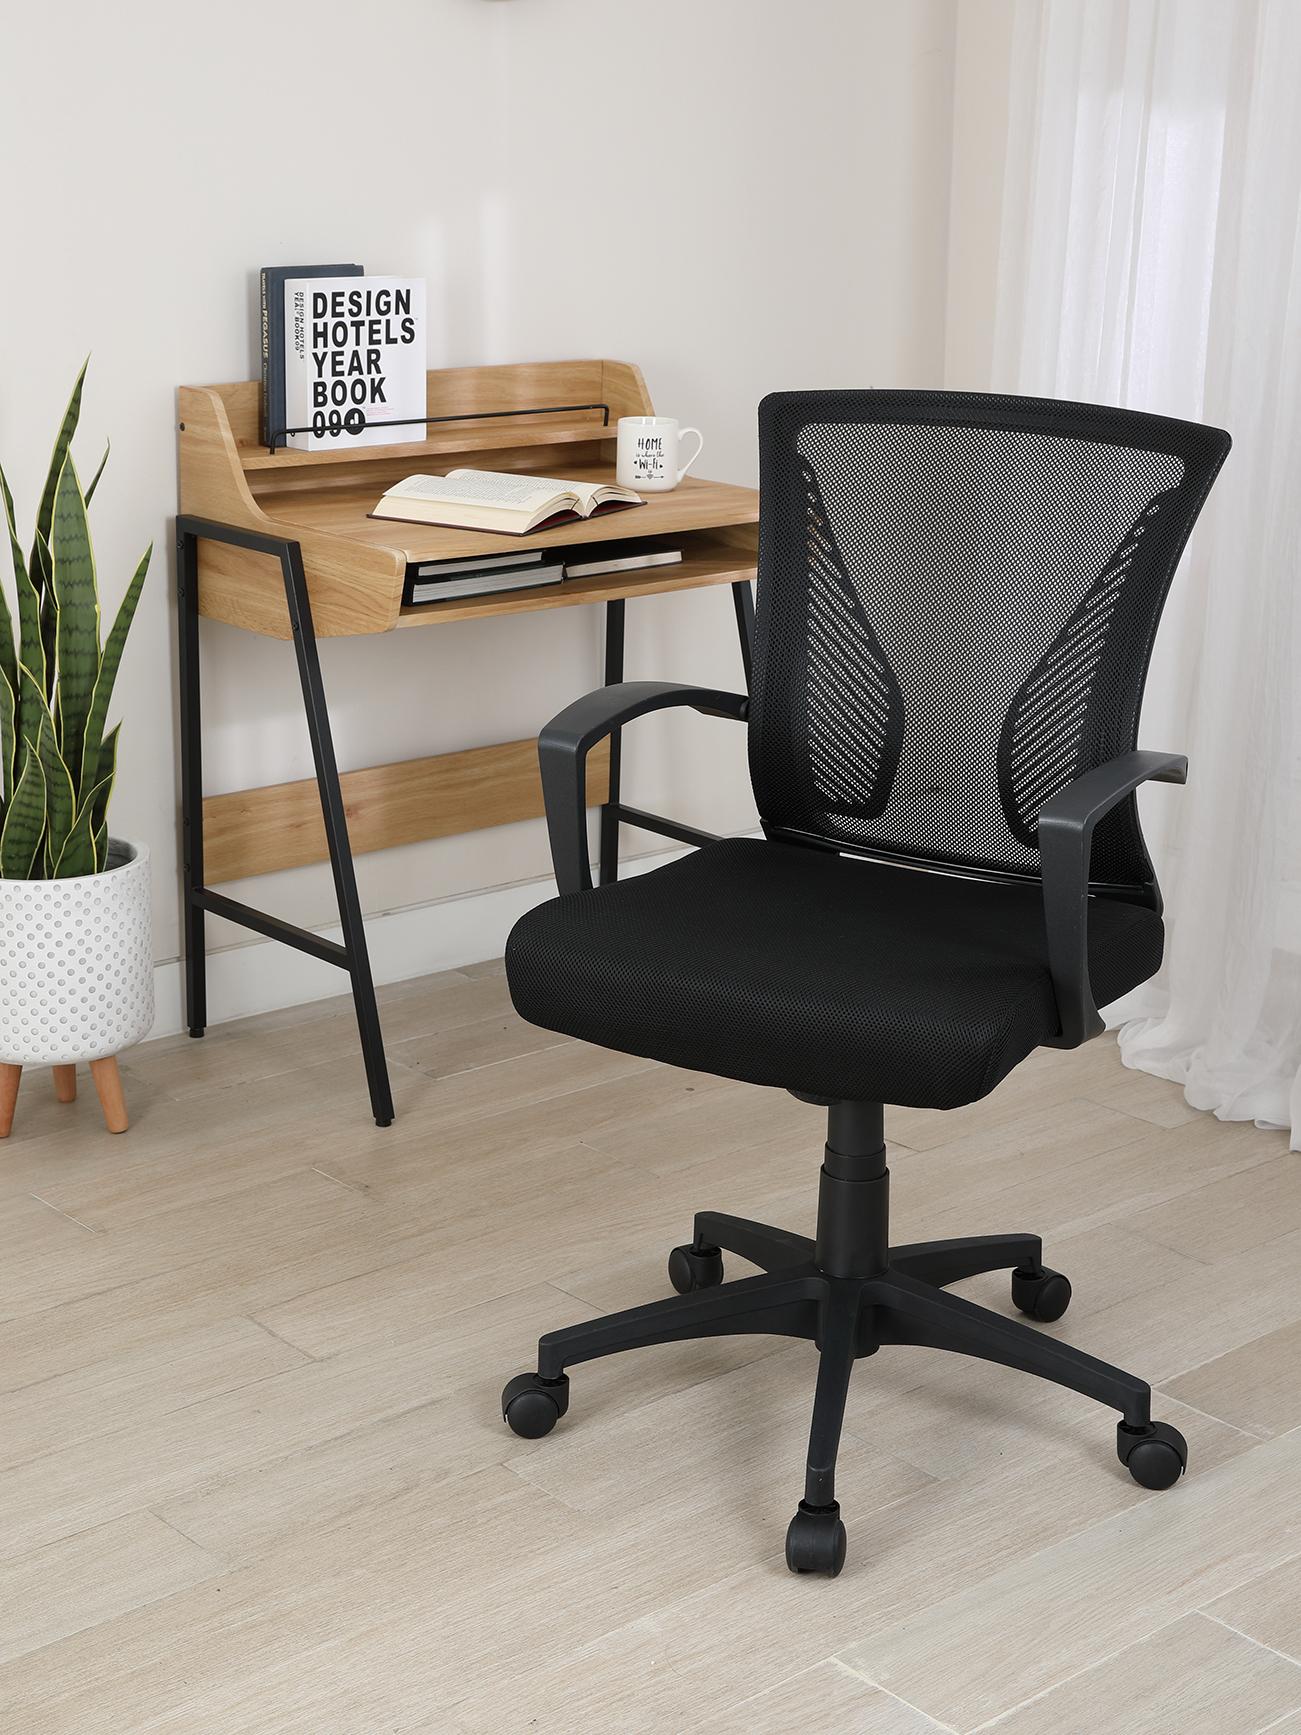 เก้าอี้สำนักงาน รุ่นเด็กซ์เตอร์ - สีดำ - เก้าอี้ทำงาน เก้าอี้สำหรับโต๊ะทำงาน ผลิตจากวัสดุพีพี